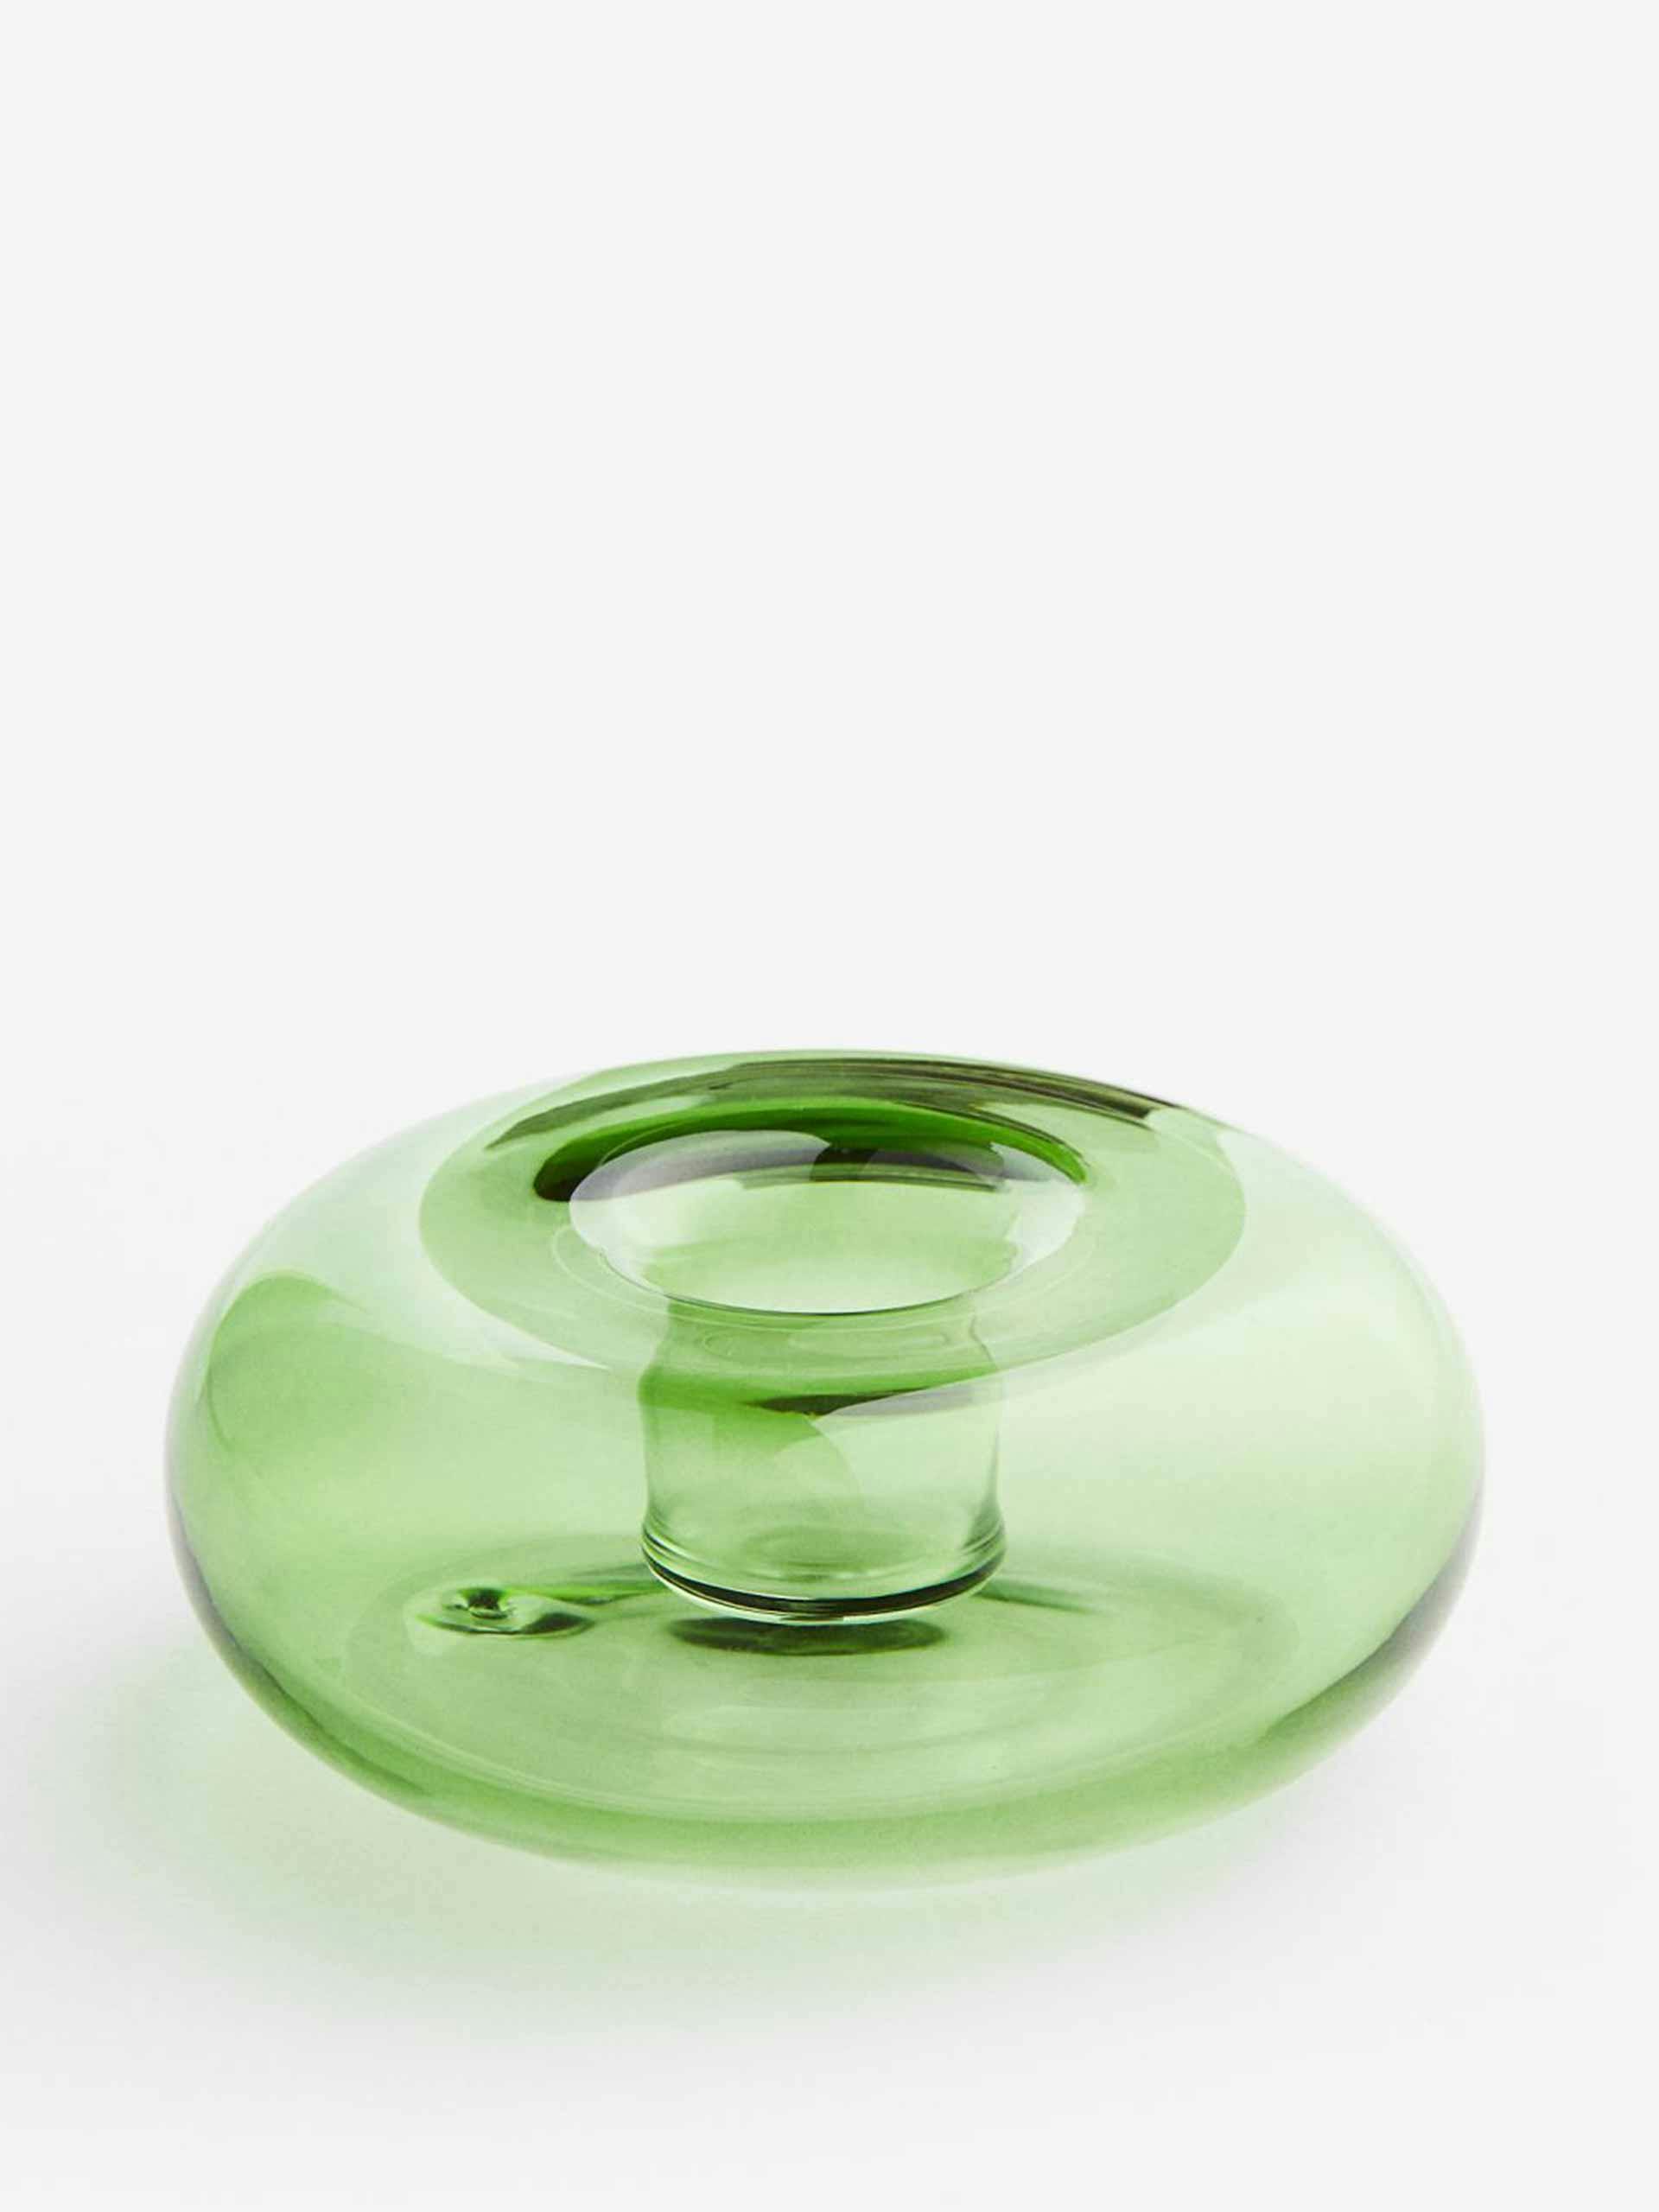 Green glass candlestick holder